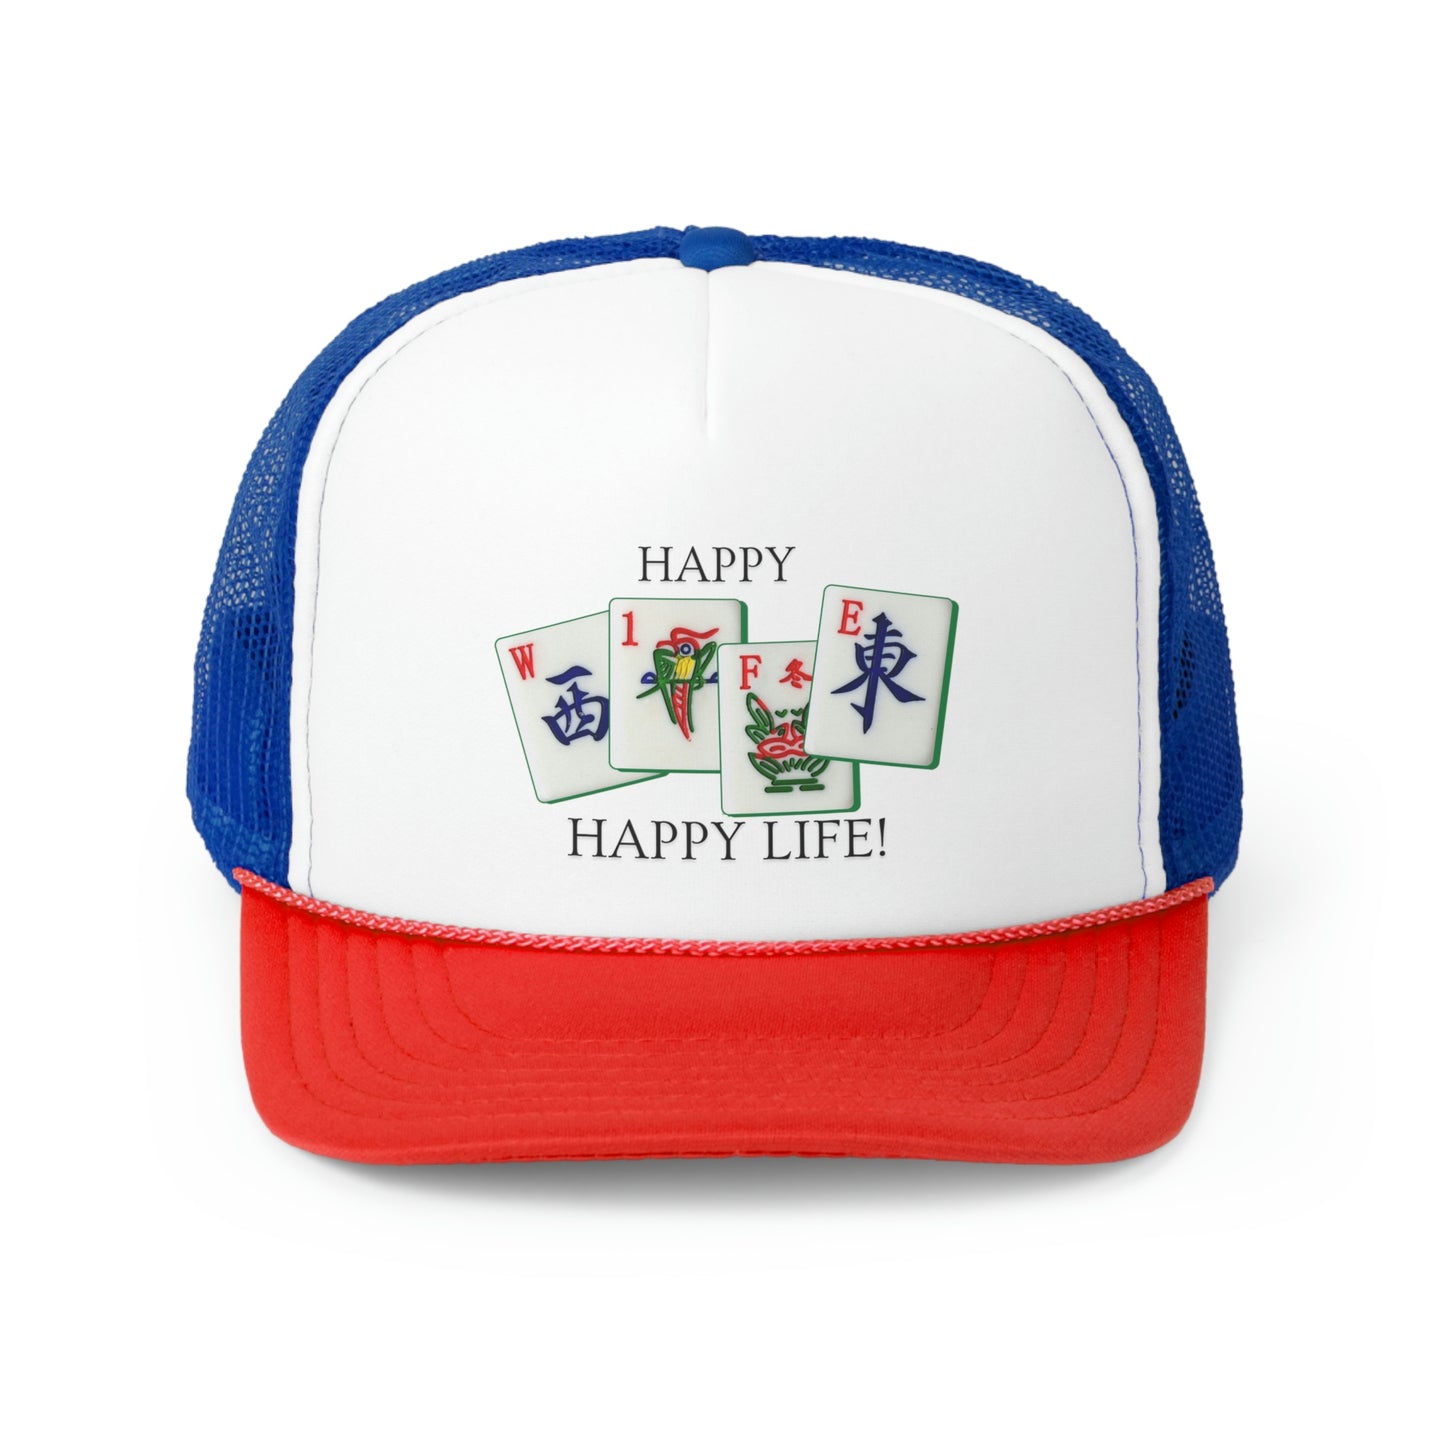 Happy Mah Jongg Wife, Happy Life Trucker Cap